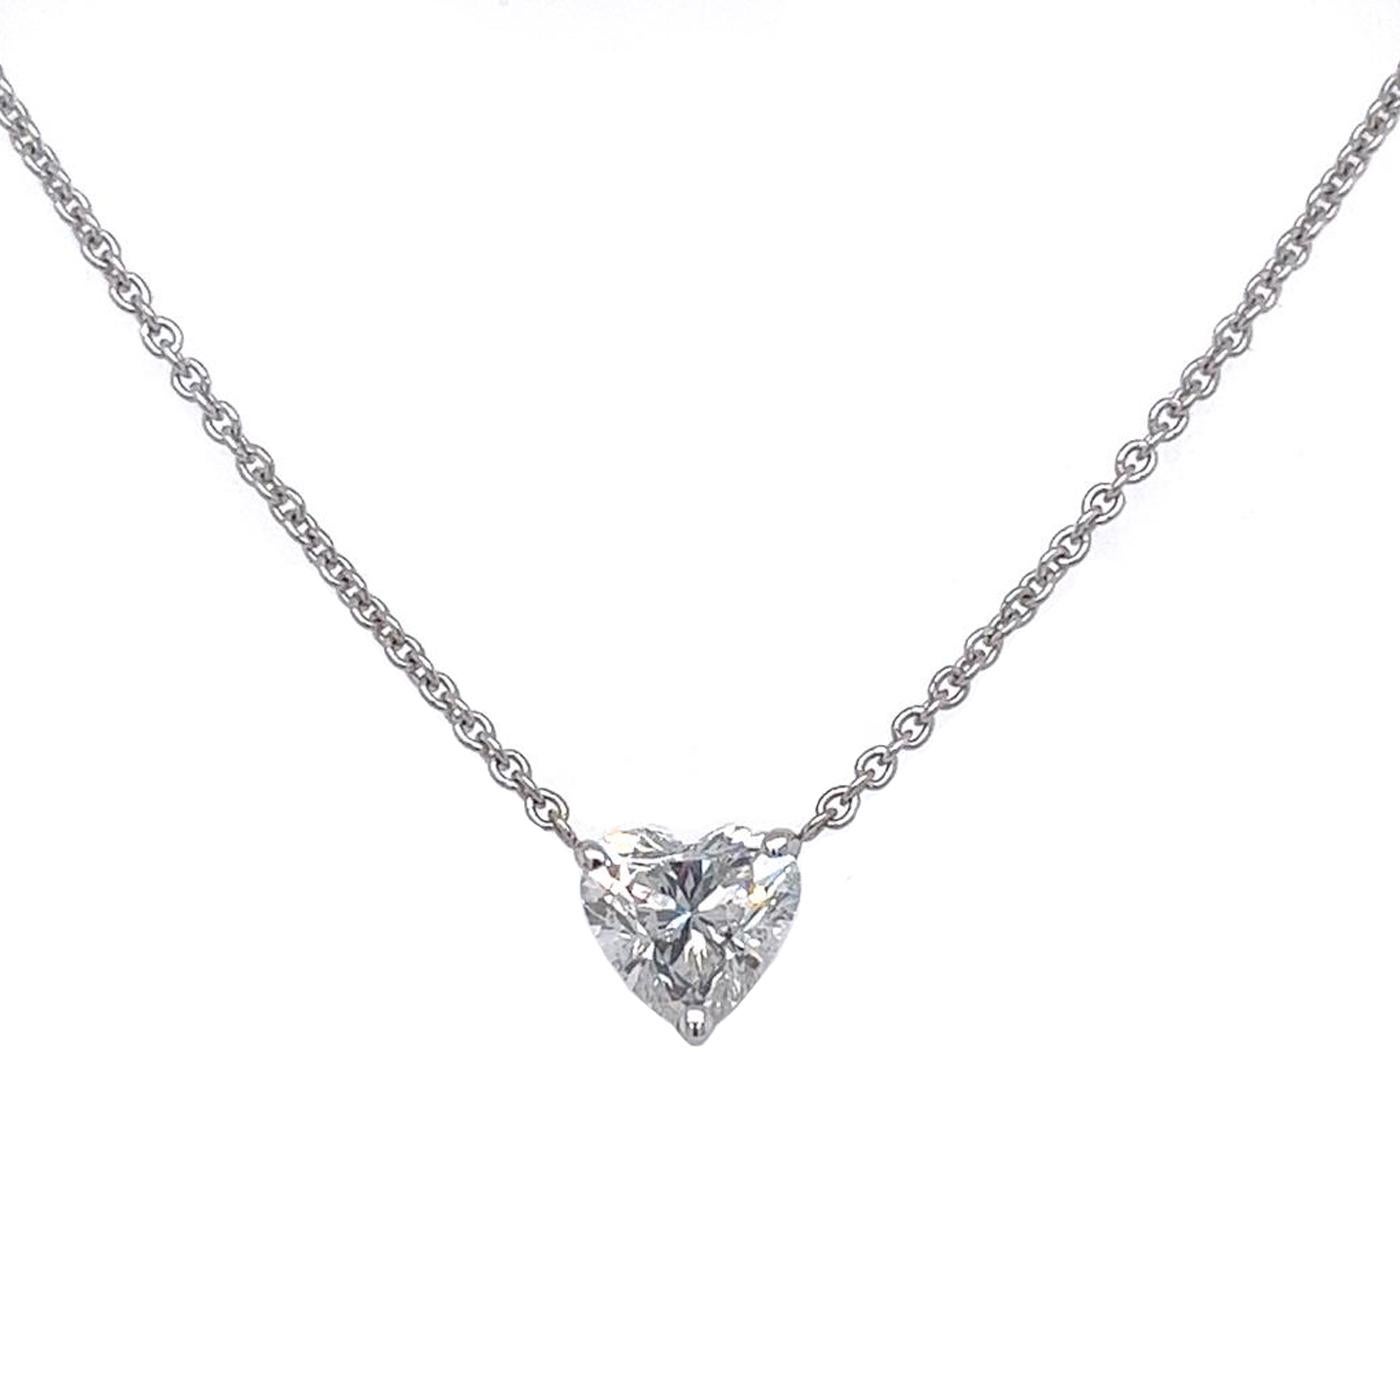 Modernist 2.21ct IGL Heart Shape Diamond Solitaire Pendant Necklace D Color VS2 Clarity